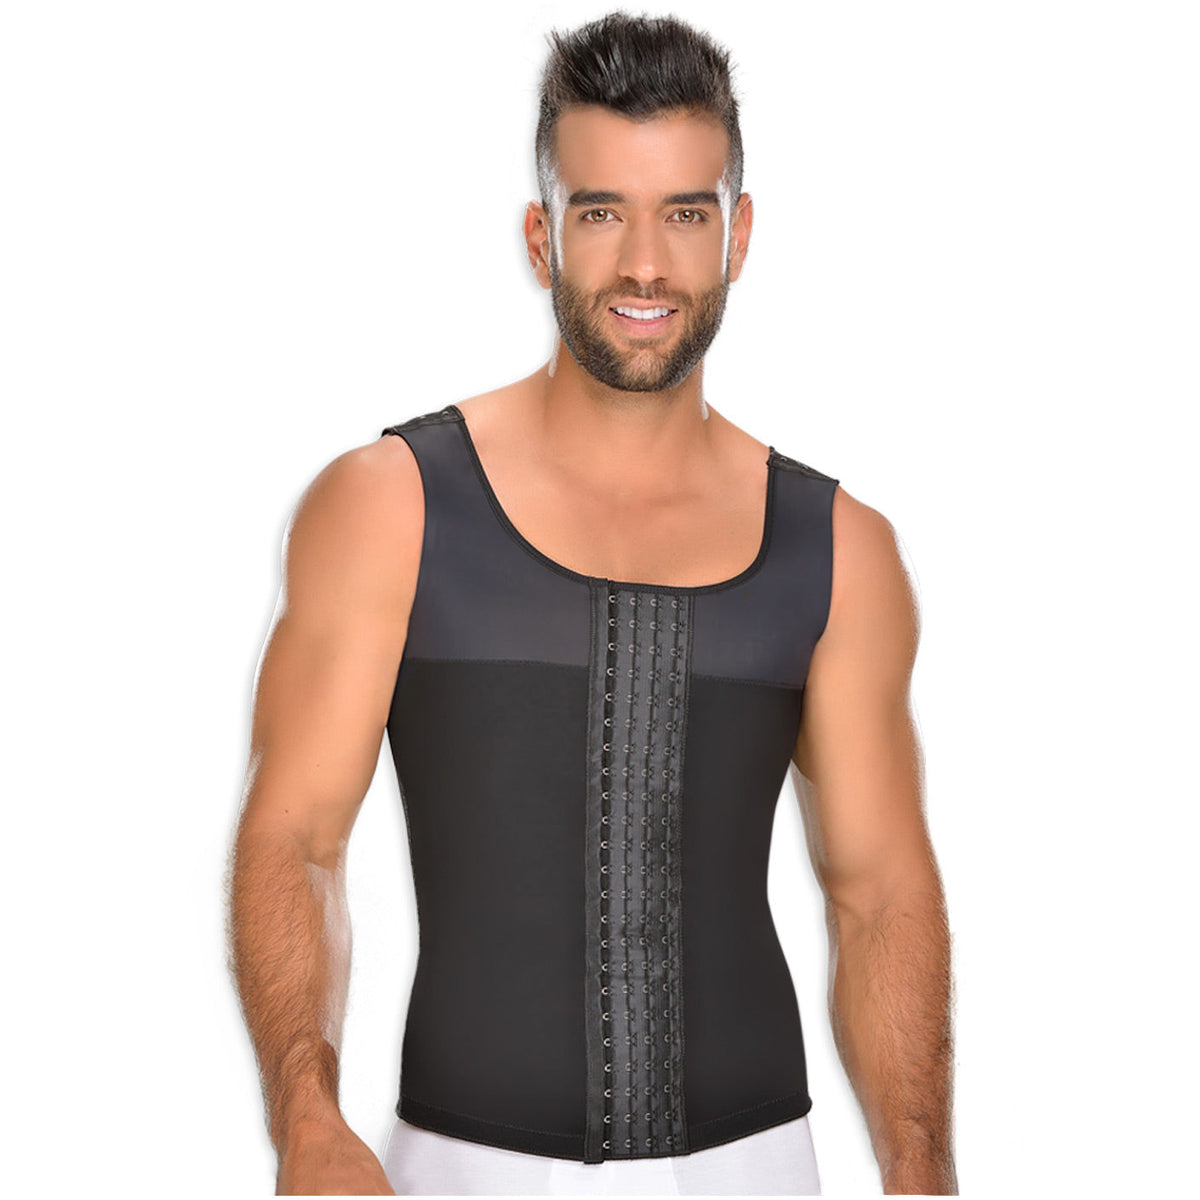 Fajas MYD 0060 | Compression Vest Body Shaper for Men